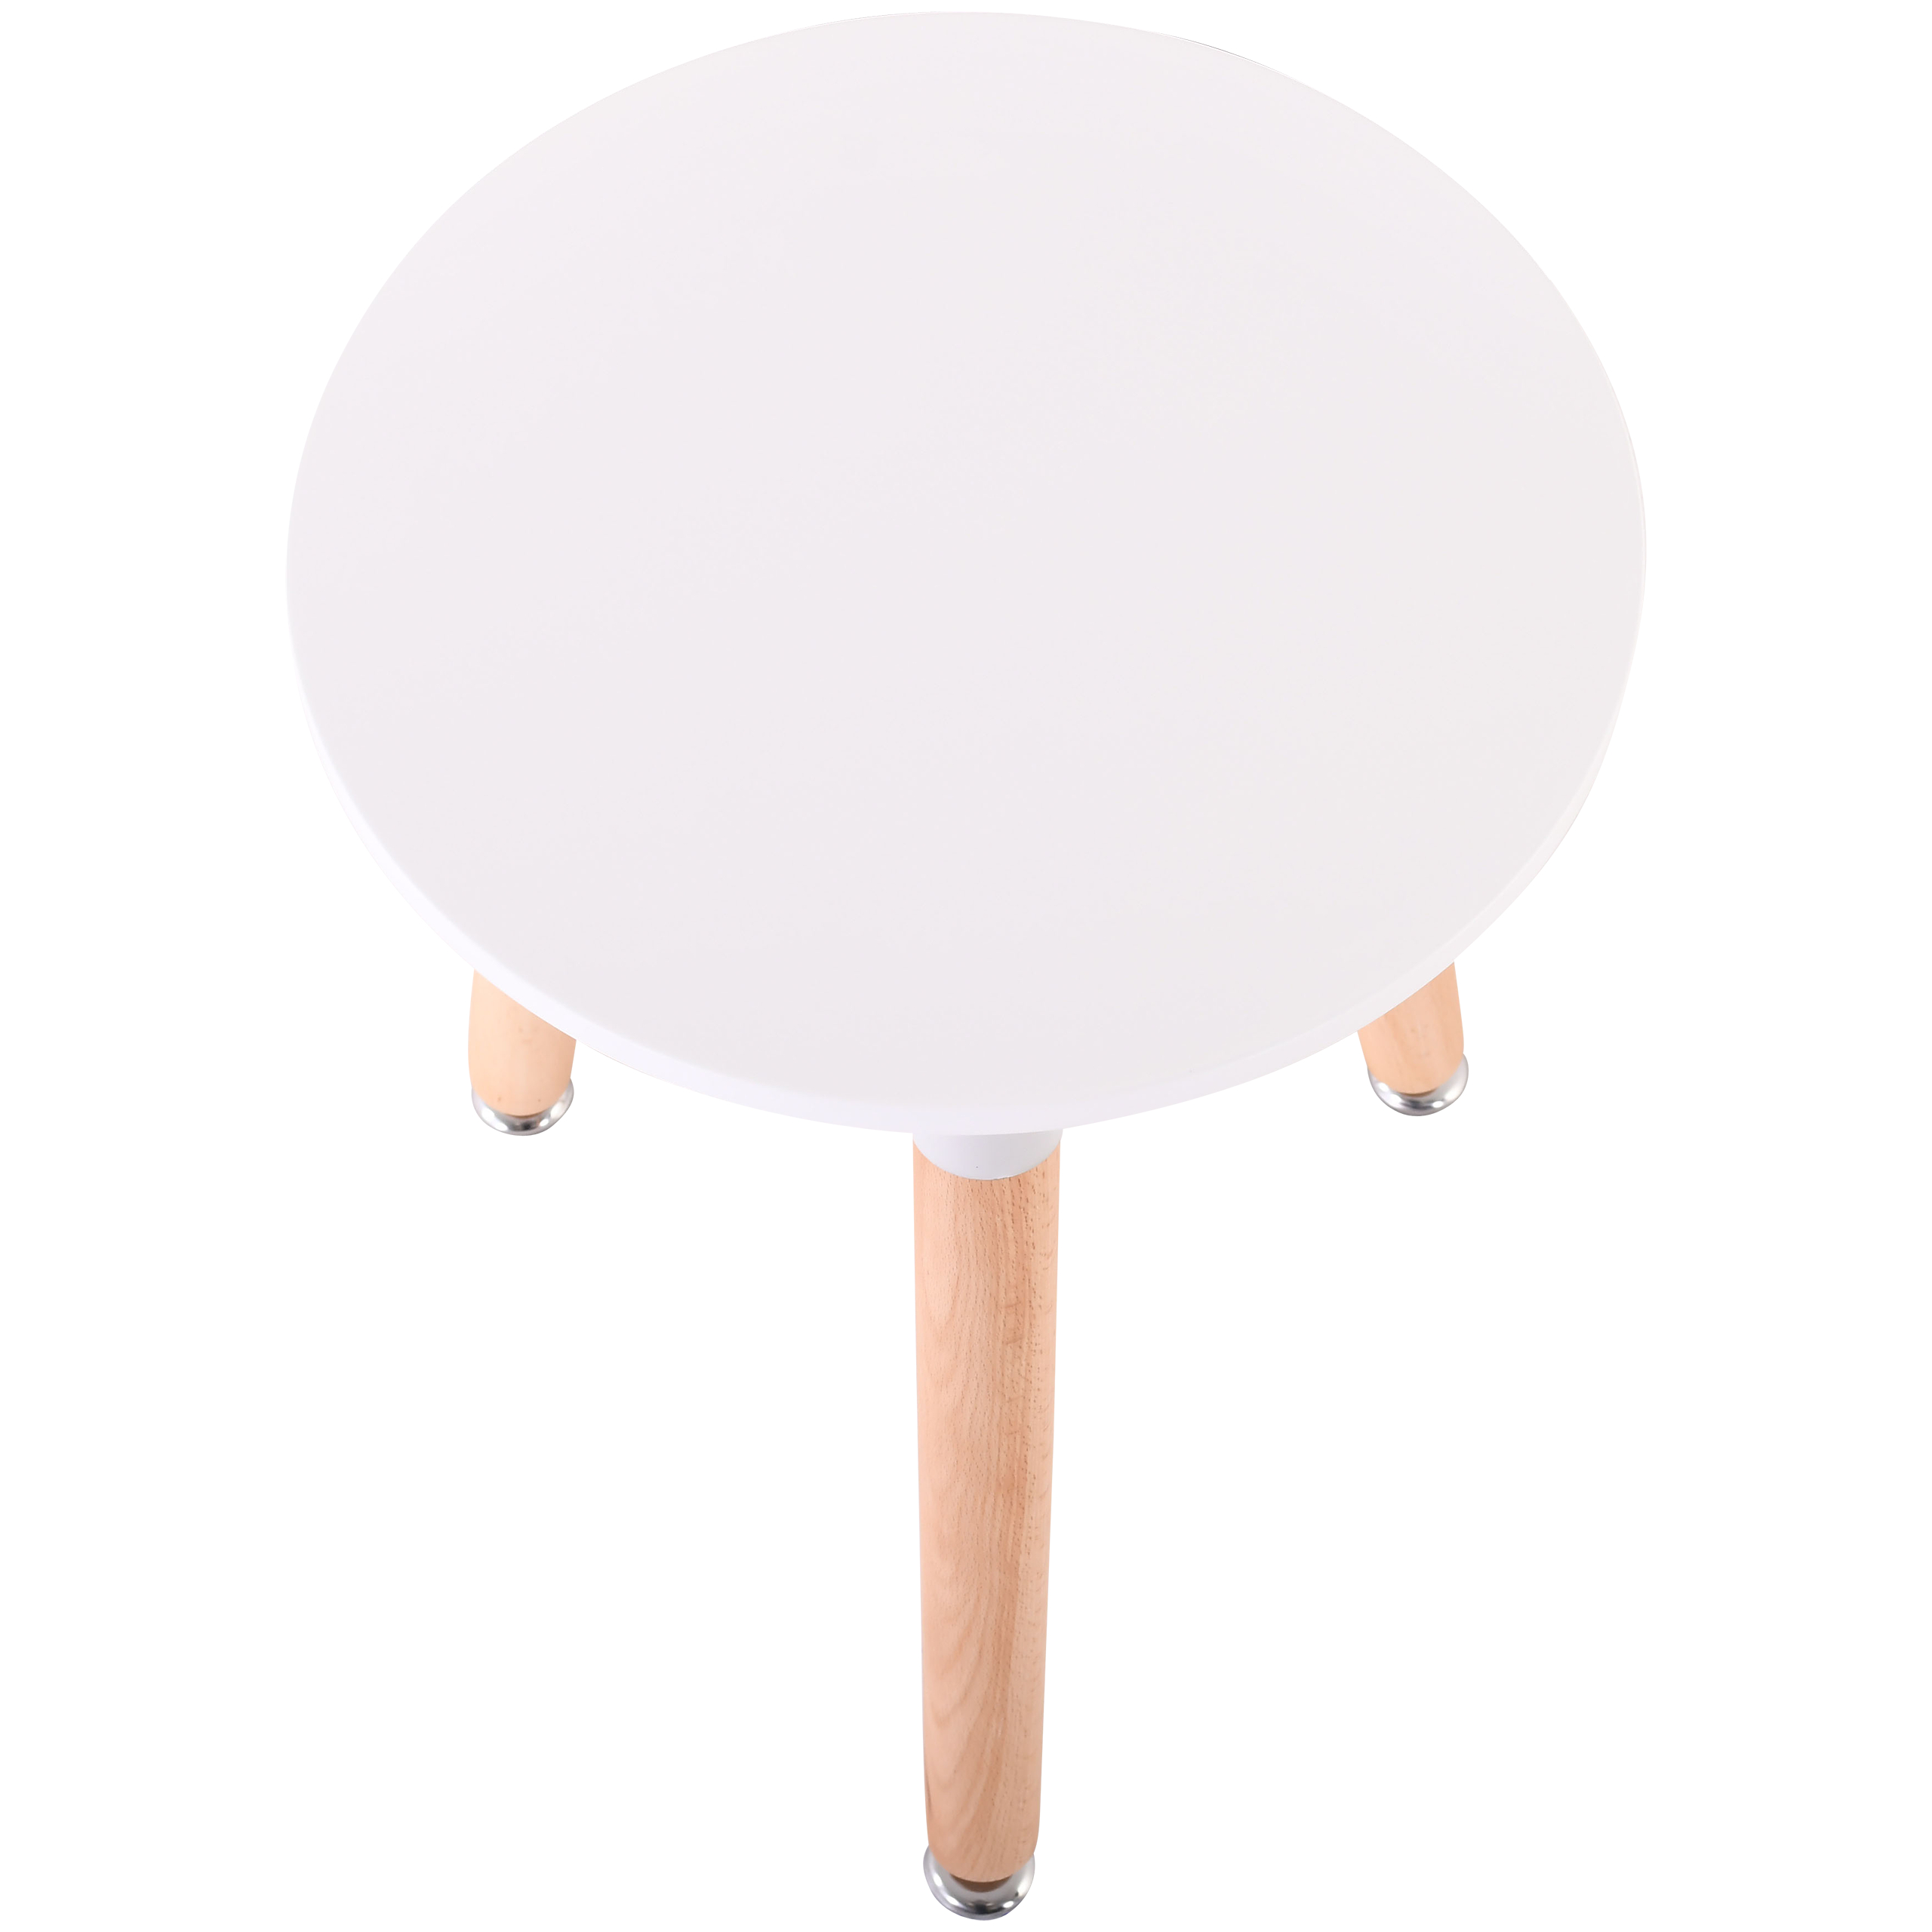 Raburg Beistell-Tisch Smilla extra klein, Seiden-Weiß, 46,5 cm hoch, 35 cm Durchmesser, Beine Buche